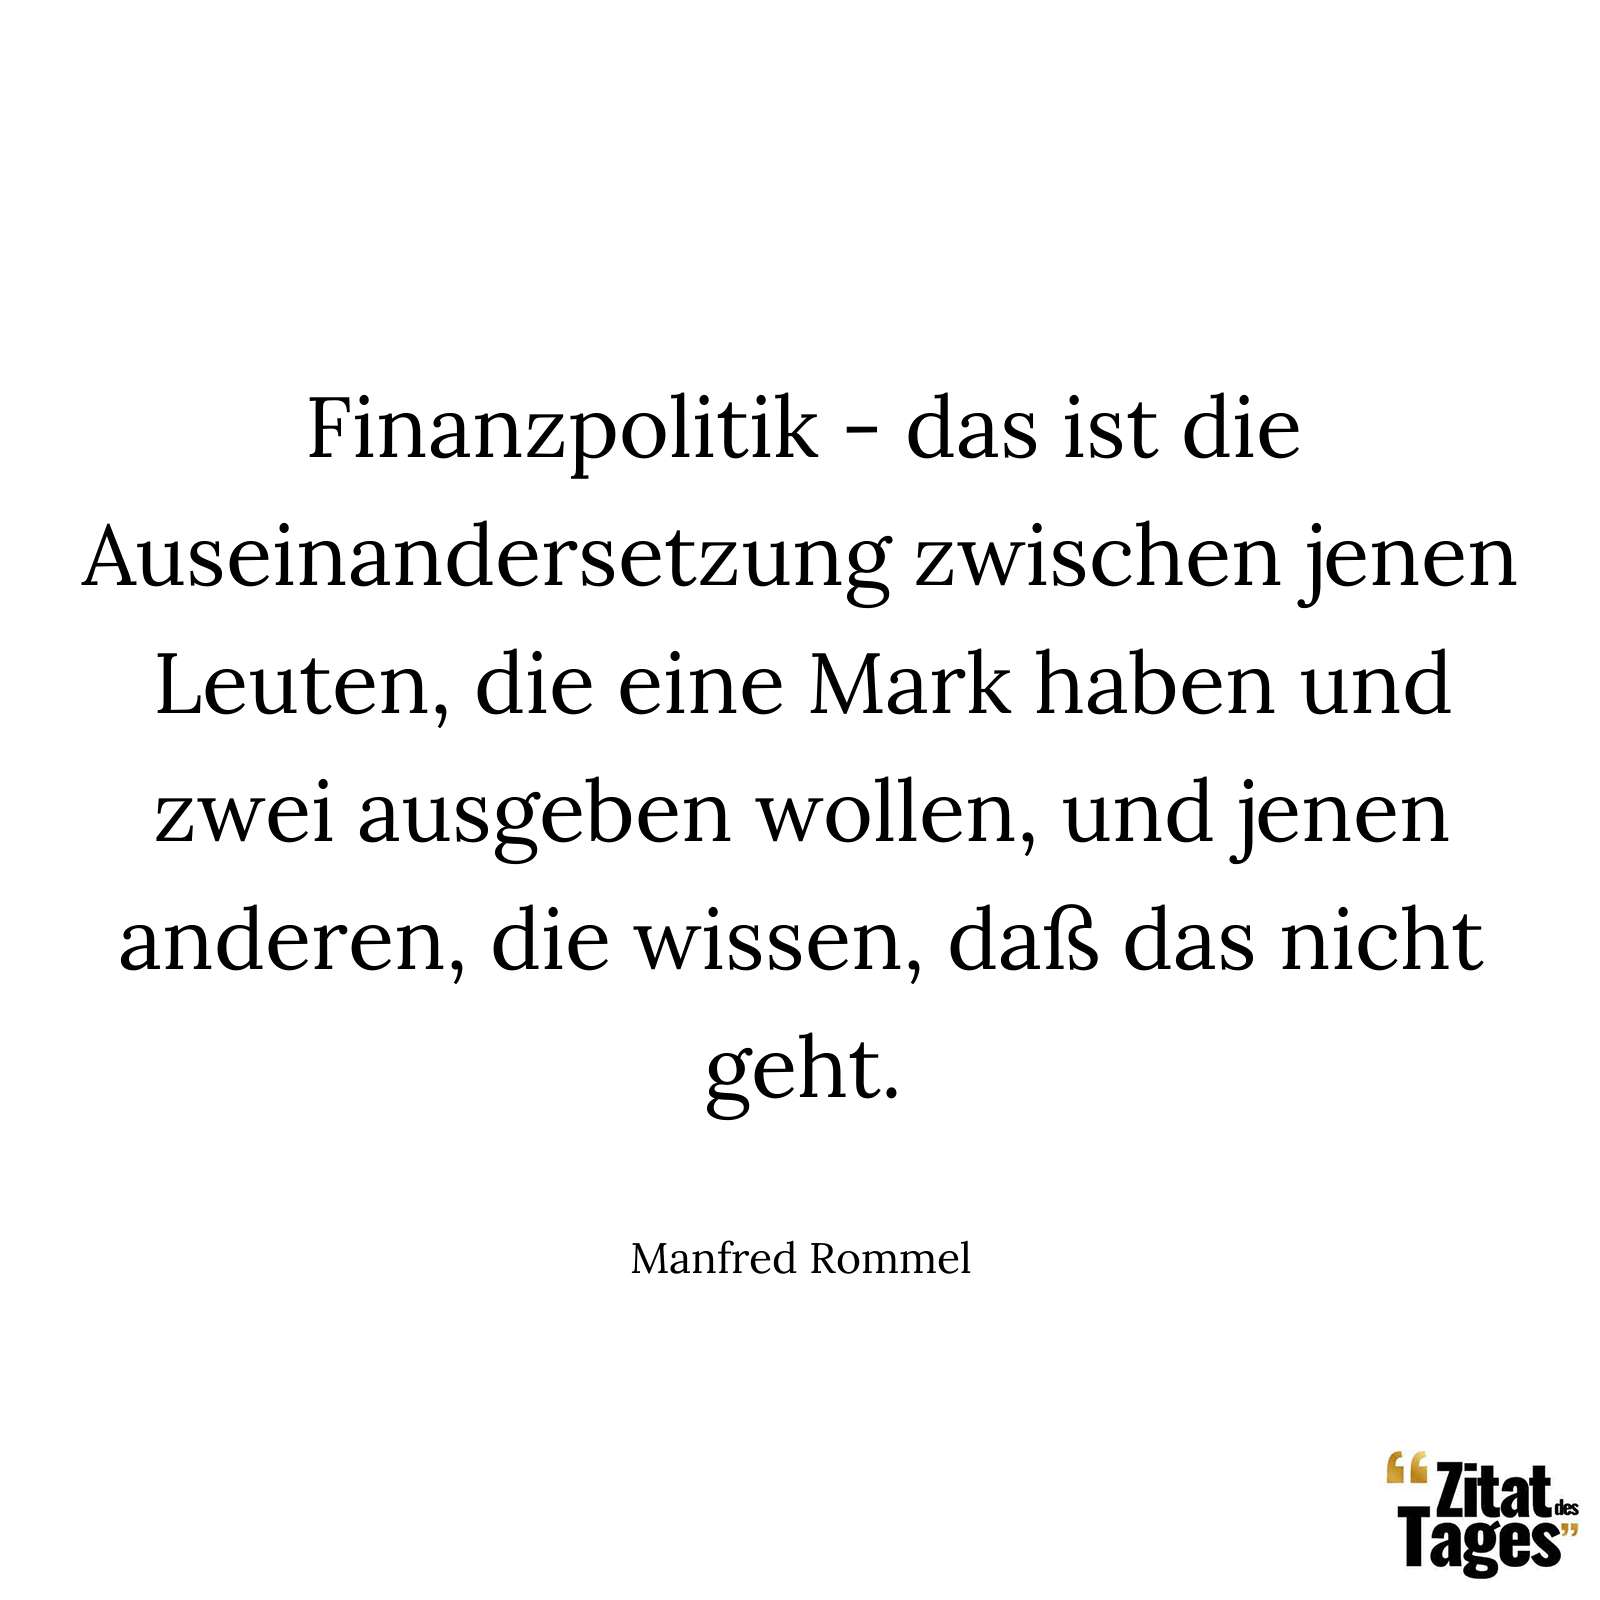 Finanzpolitik - das ist die Auseinandersetzung zwischen jenen Leuten, die eine Mark haben und zwei ausgeben wollen, und jenen anderen, die wissen, daß das nicht geht. - Manfred Rommel